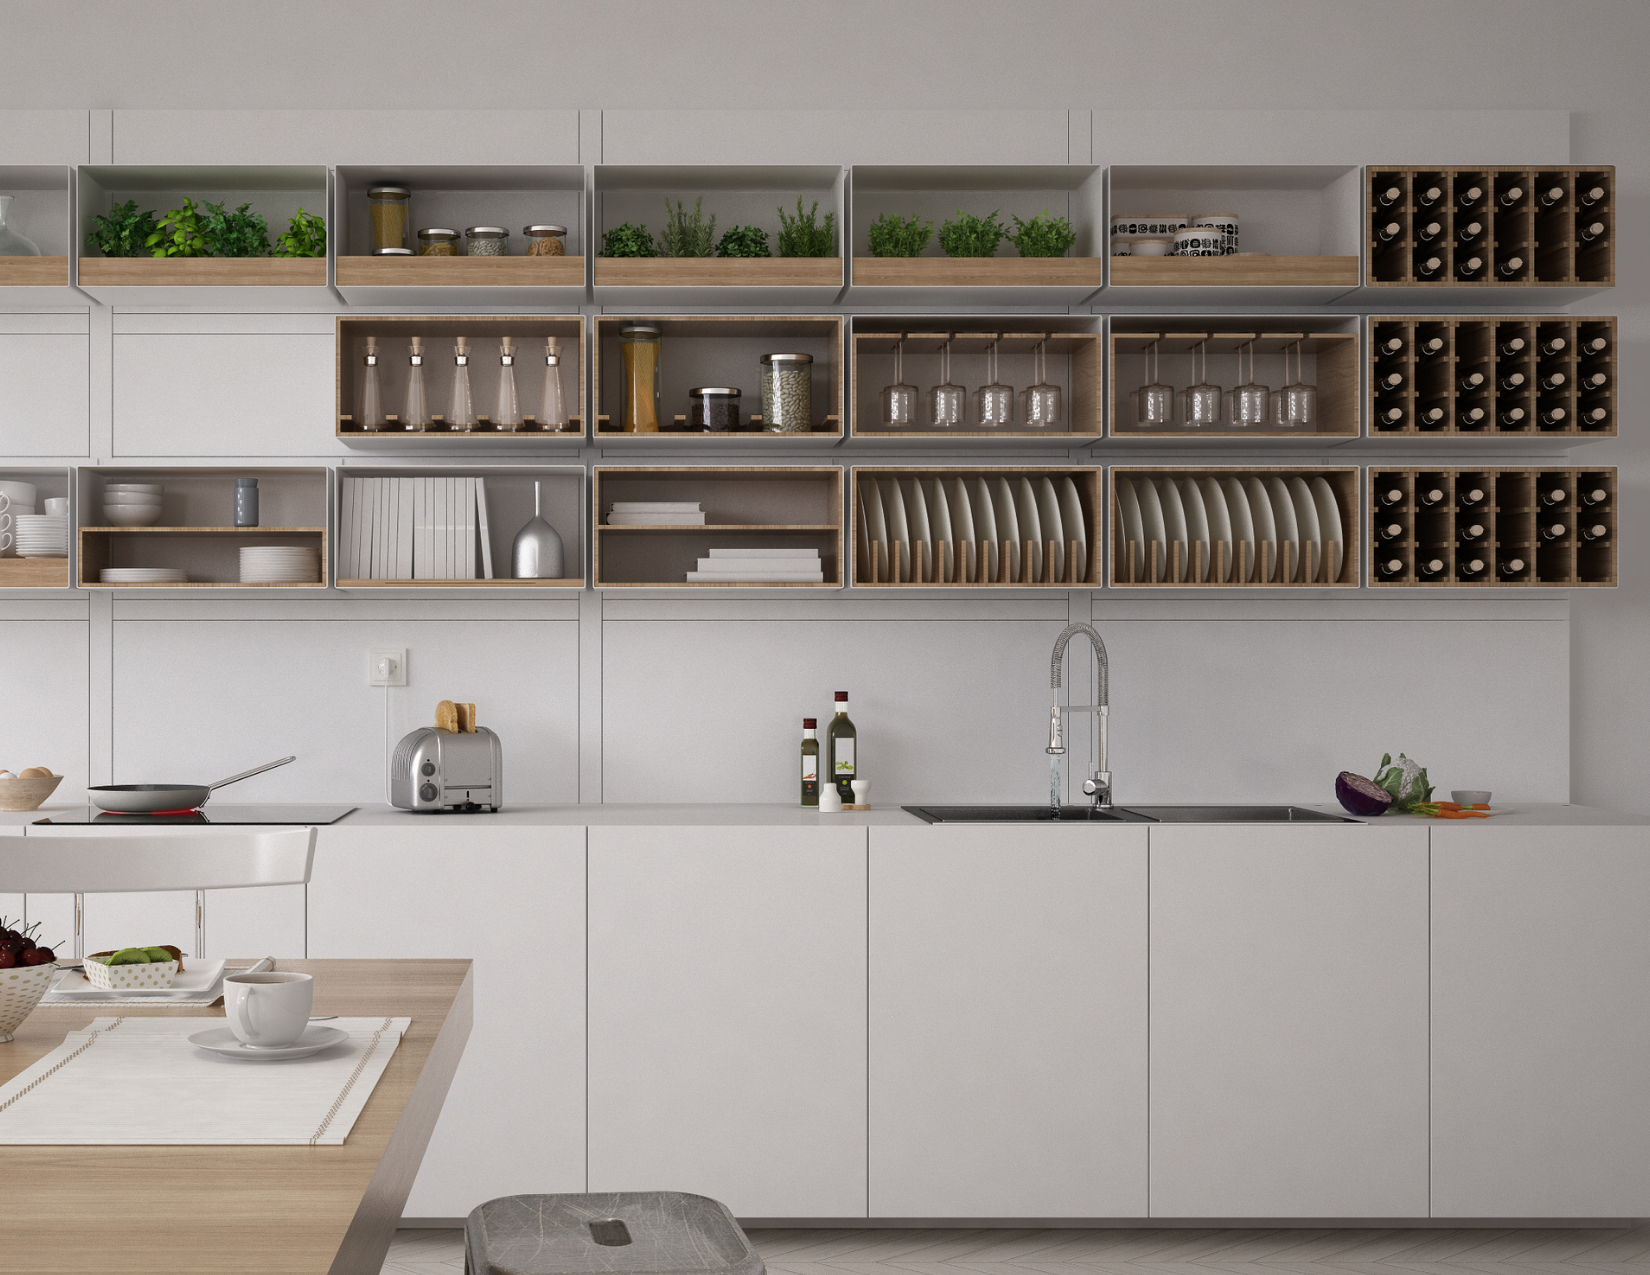 Scandinavian interior kitchen design